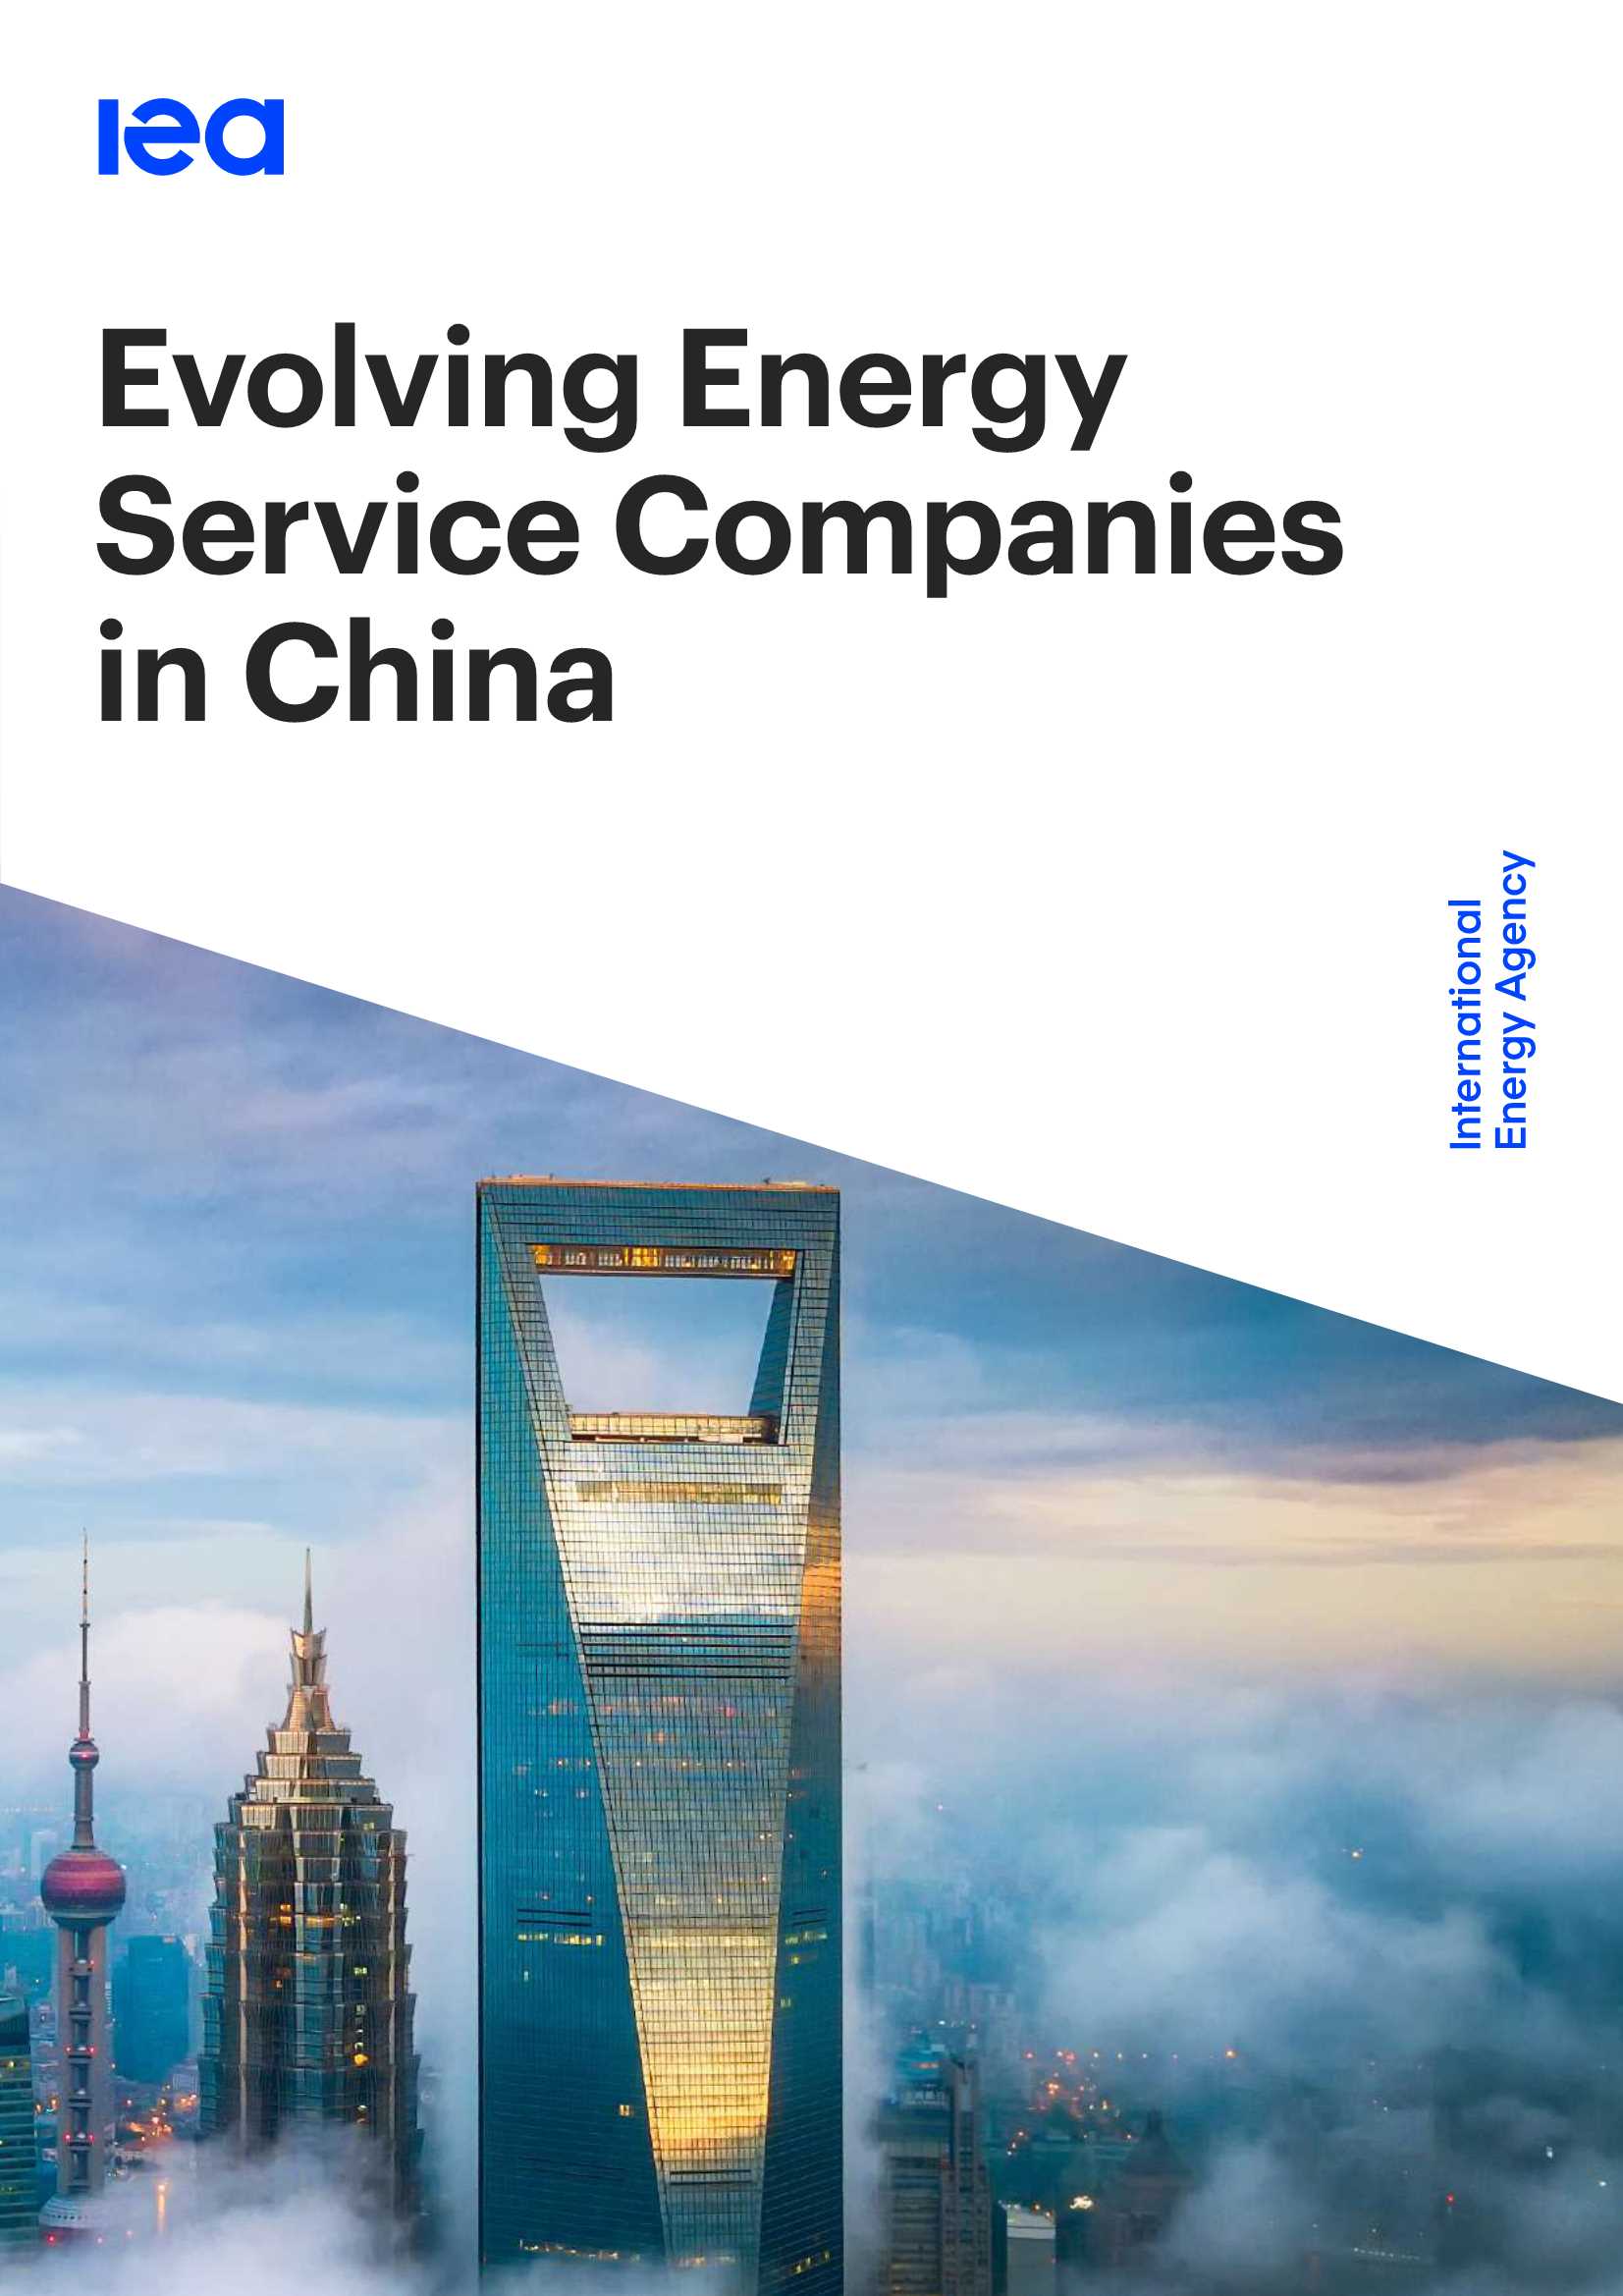 国际能源署-中国持续演变的能源服务公司-2021.09-43页